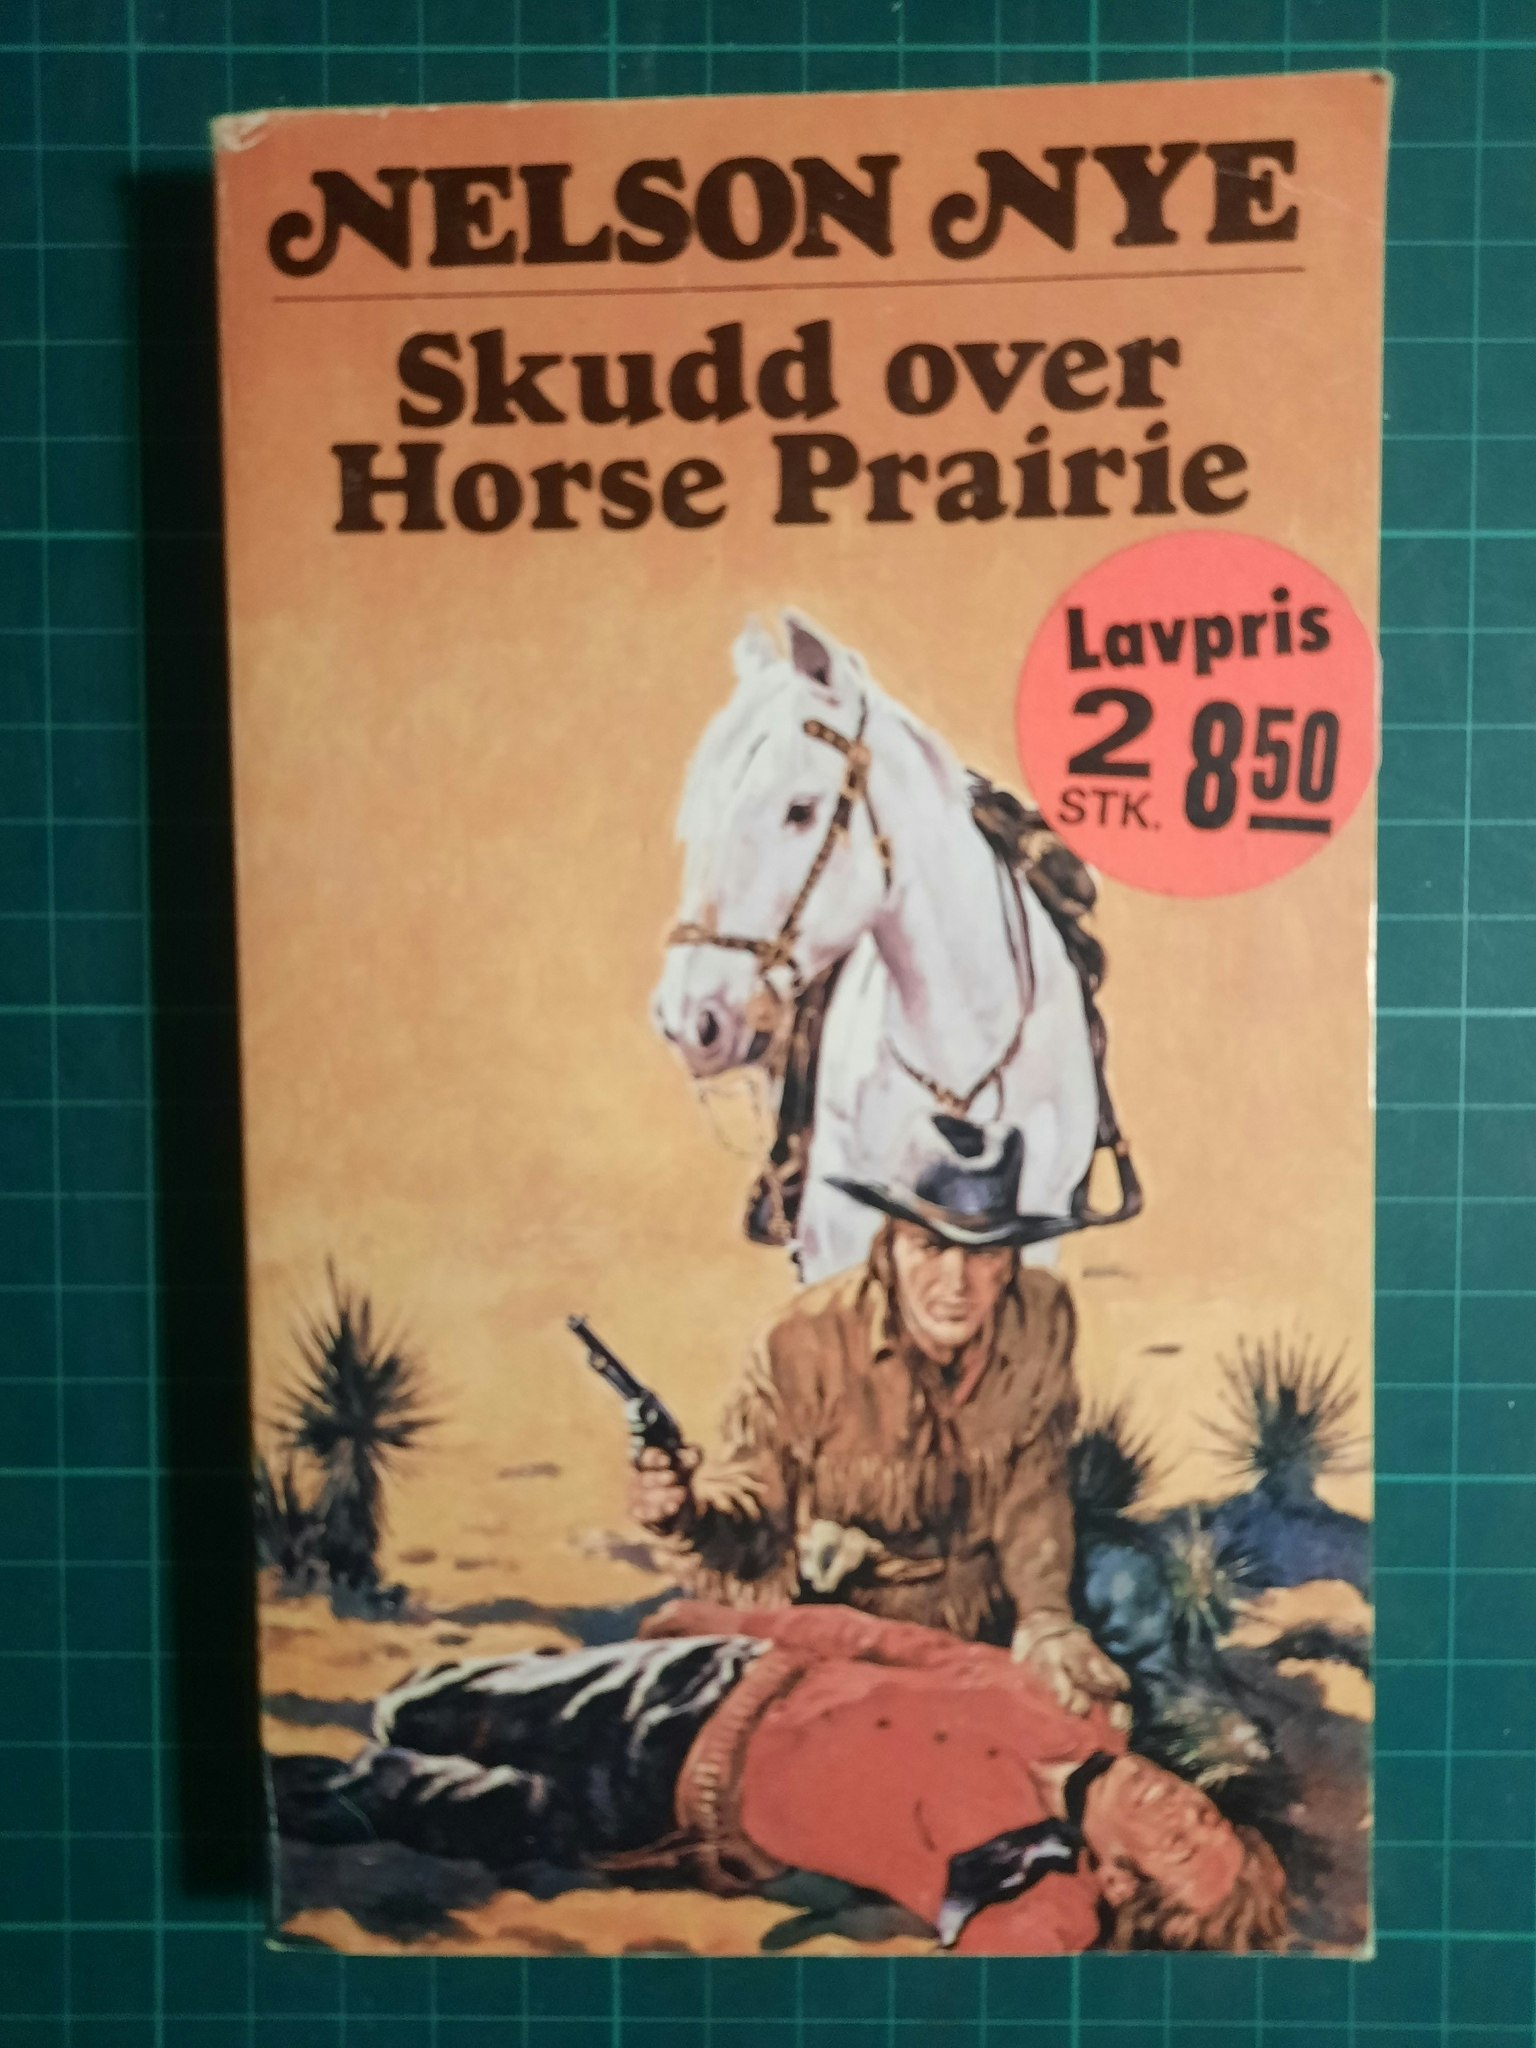 Skudd over horse prairie